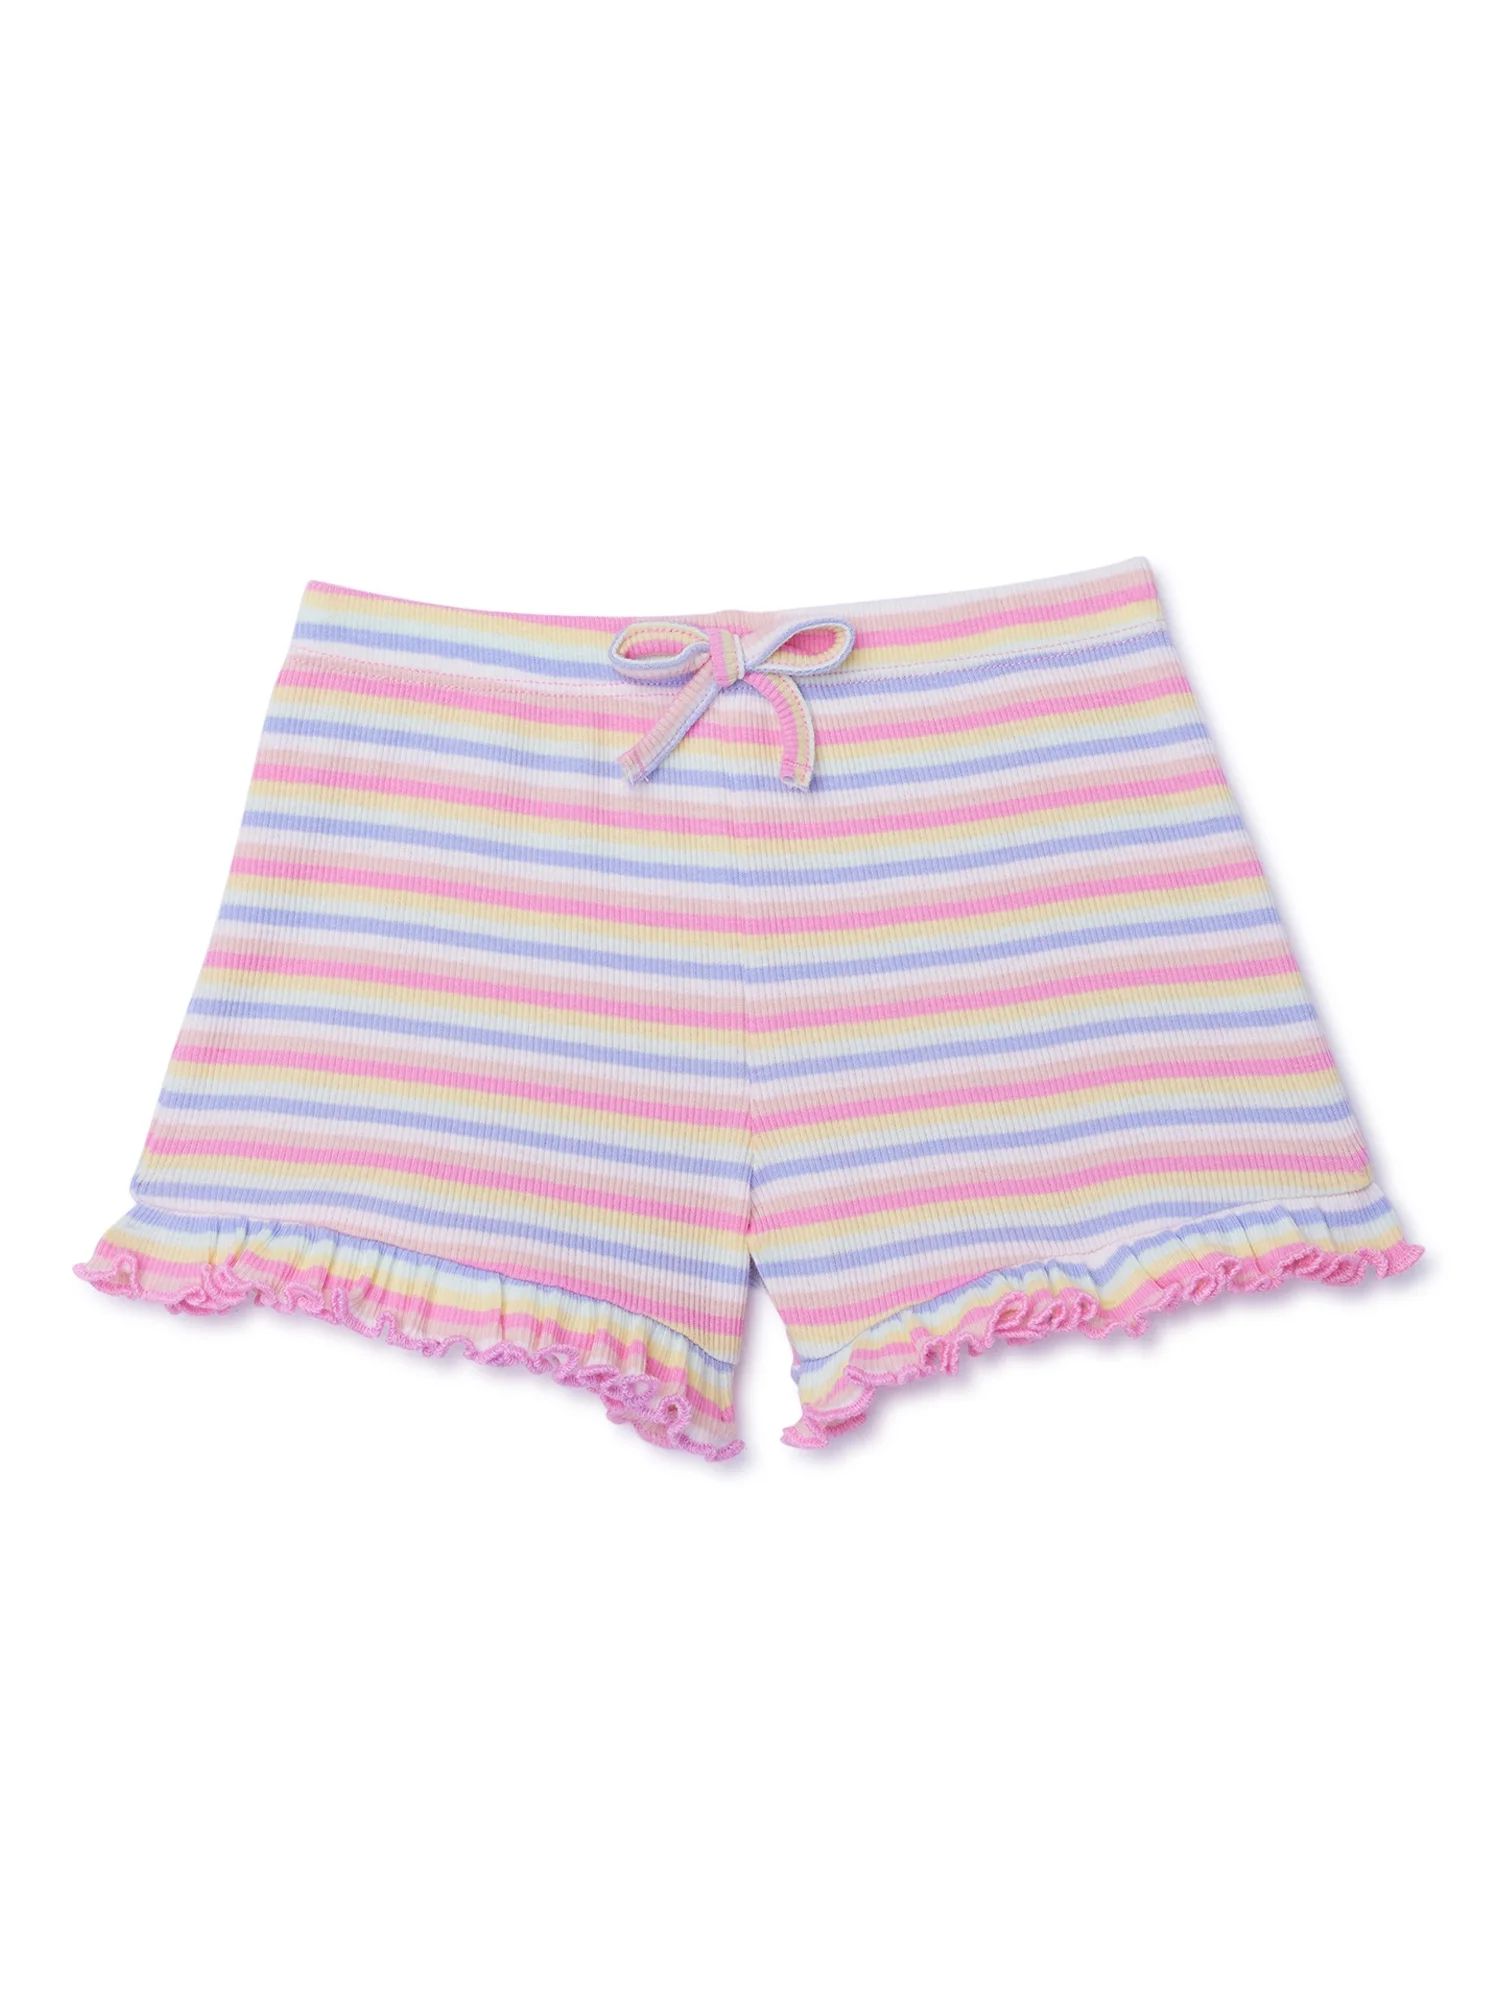 Garanimals Toddler Girl Stripe Ruffle Short, Sizes 18M-5T | Walmart (US)